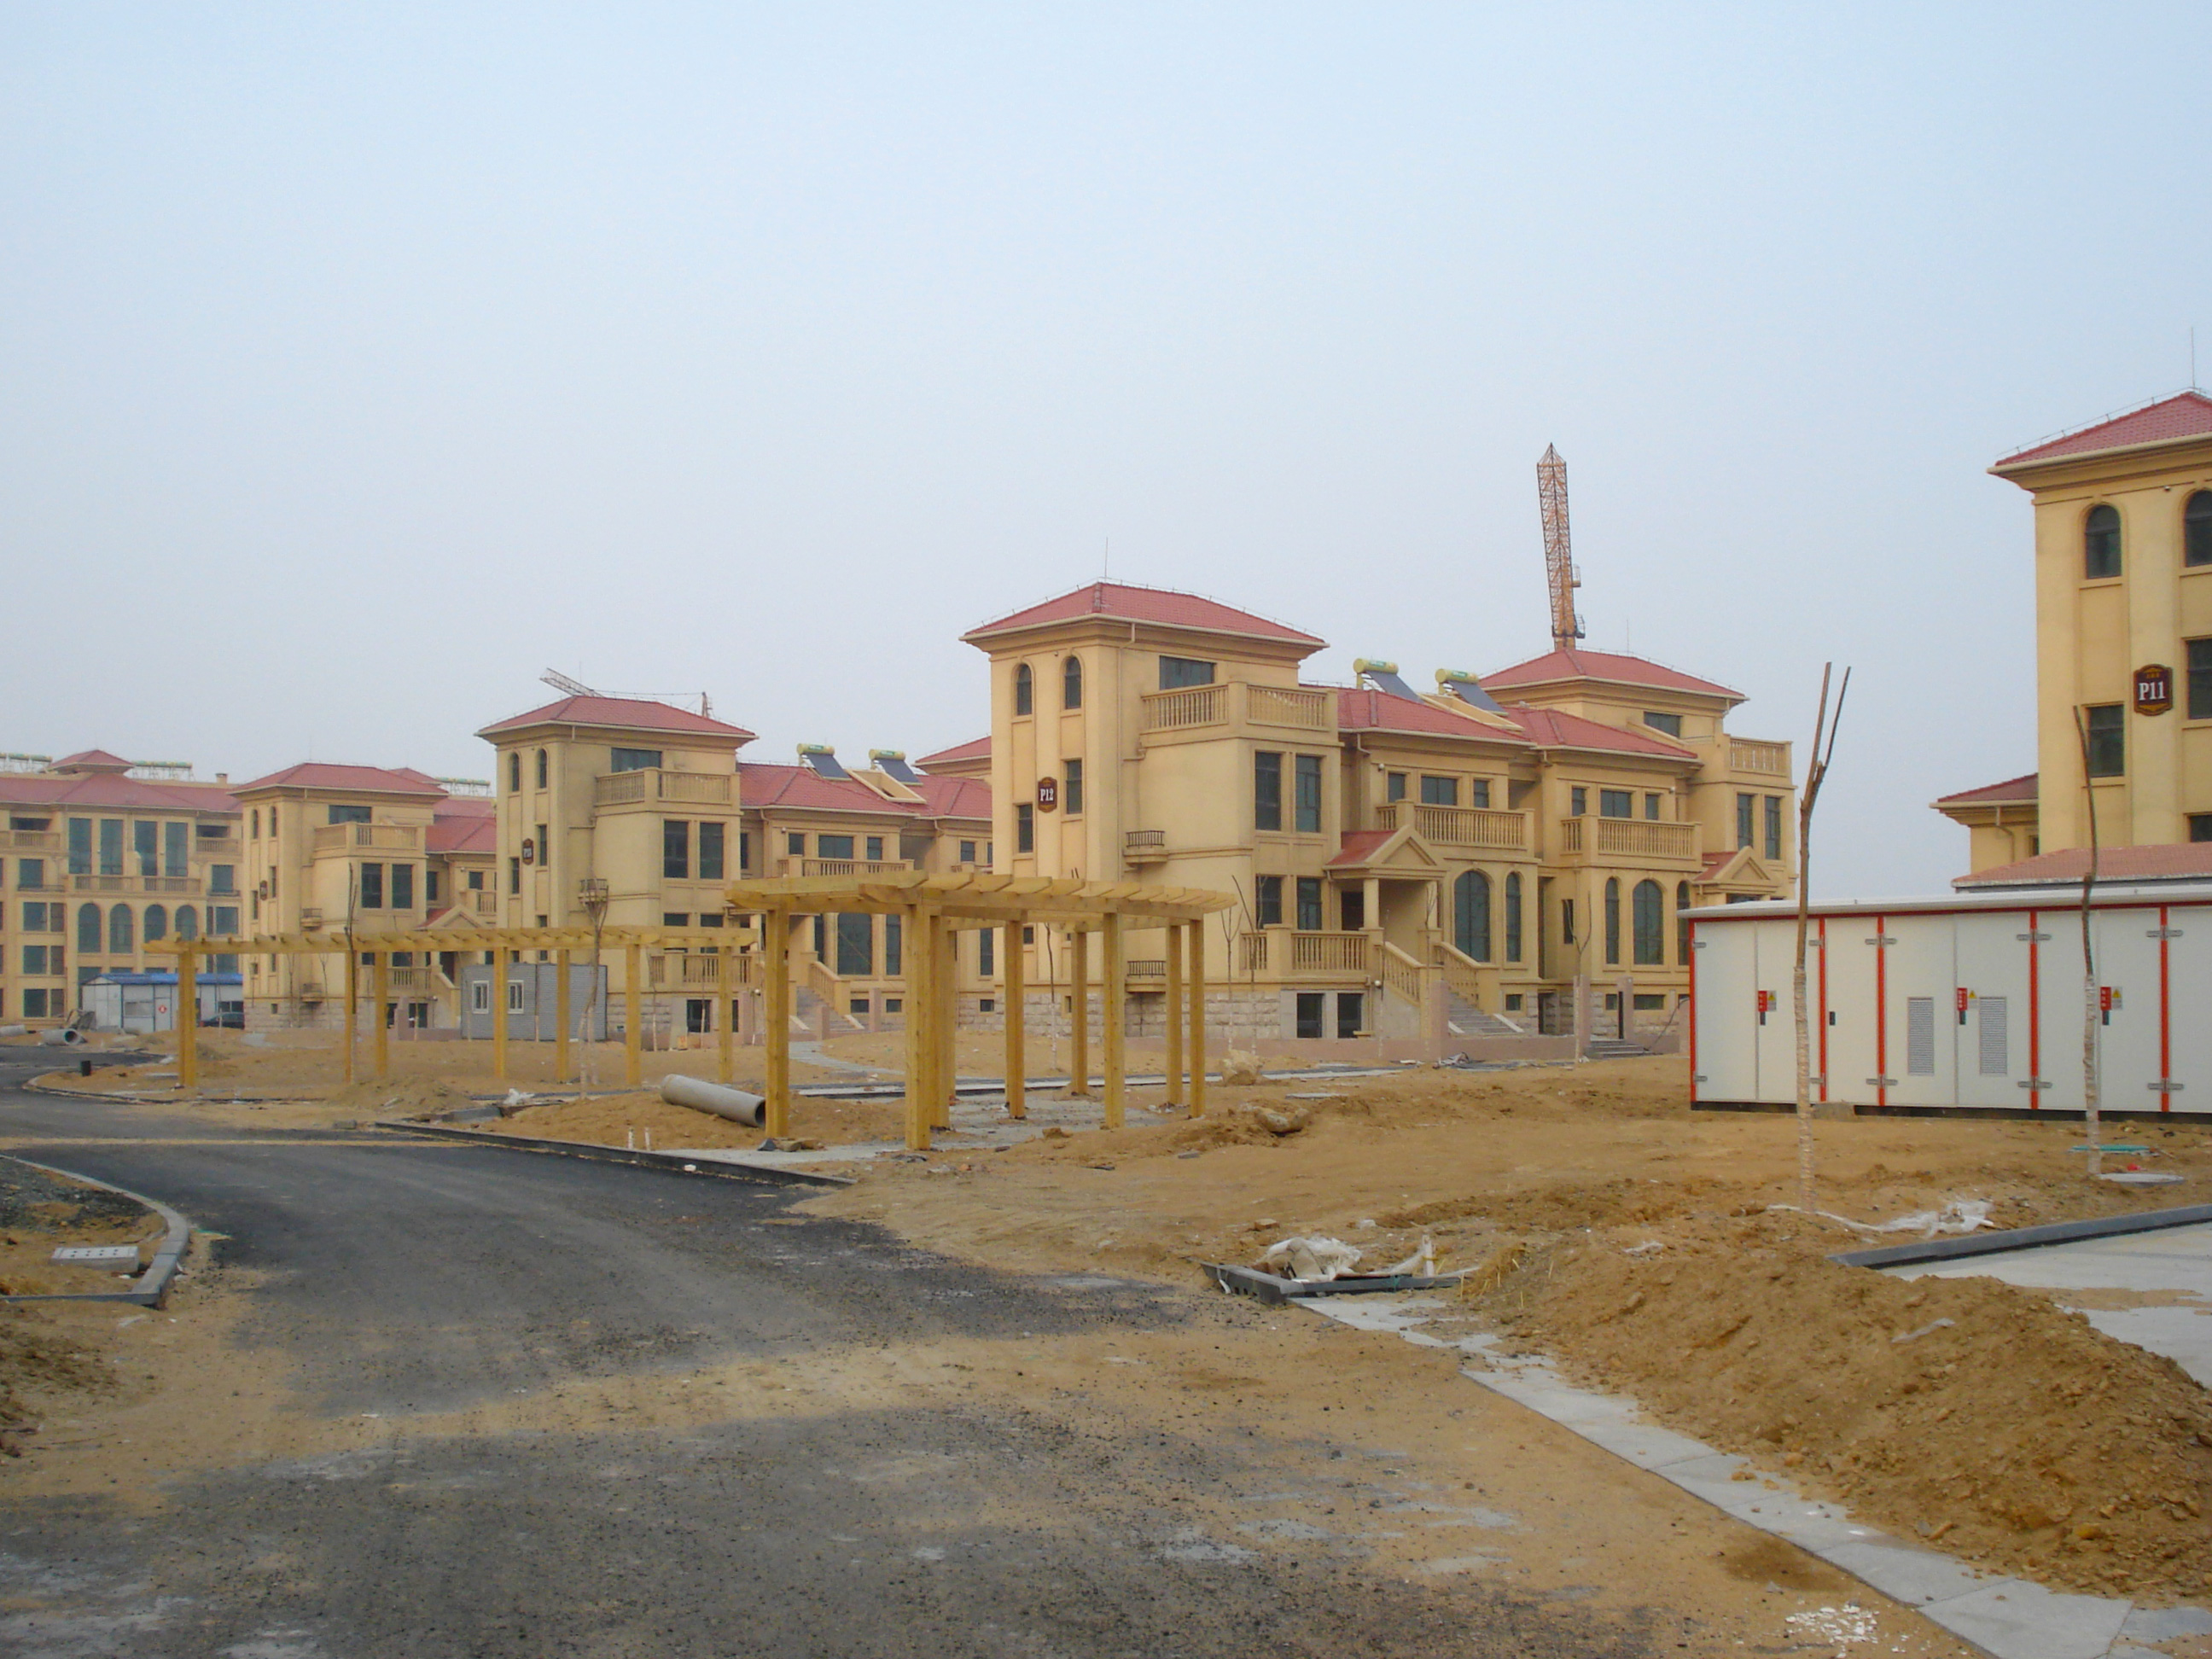 Neubaugebiet außerhalb von Weifang, China.